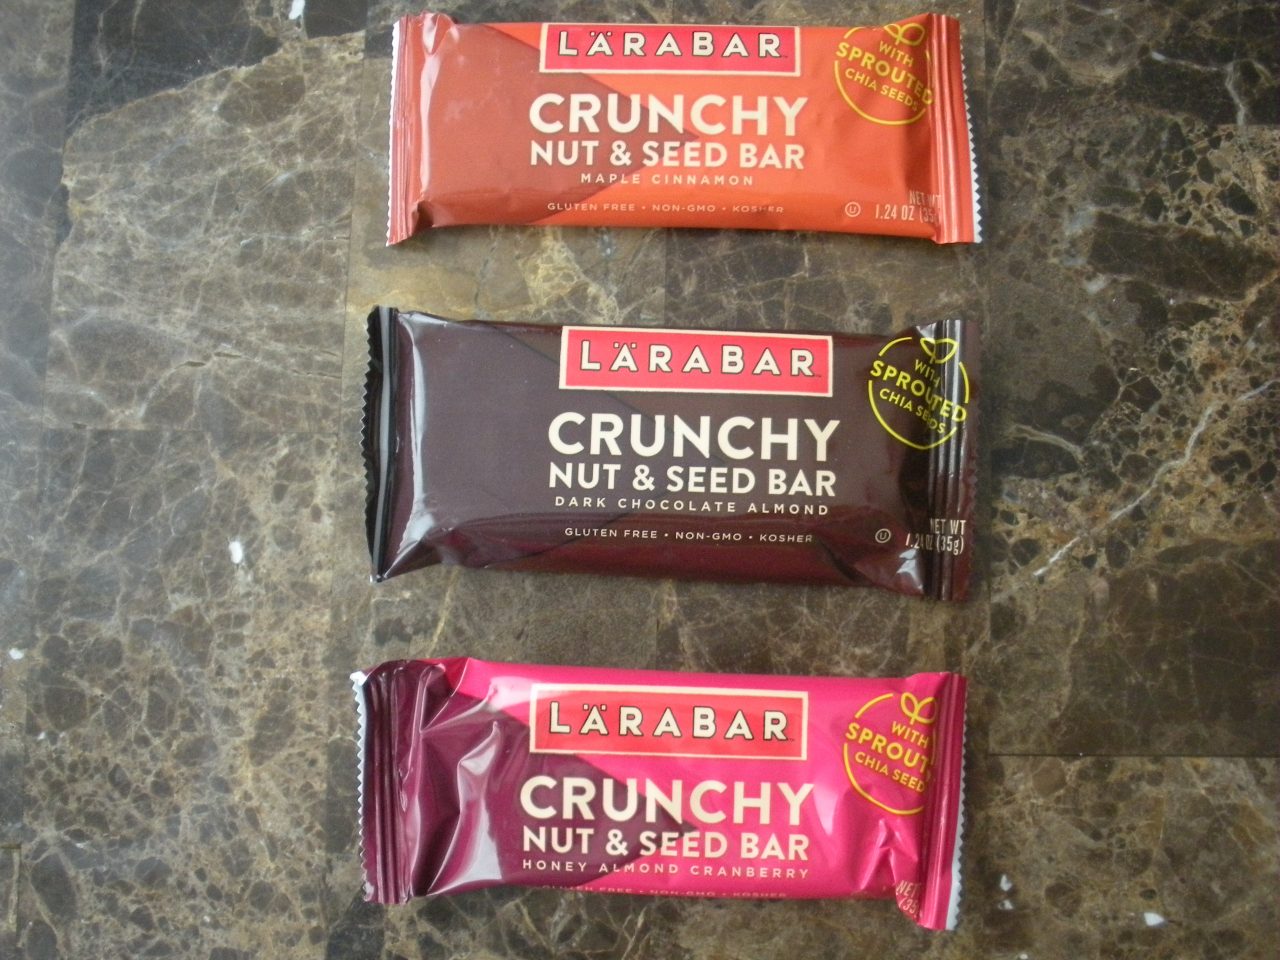 LÄRABAR has a new crunchy bar out…